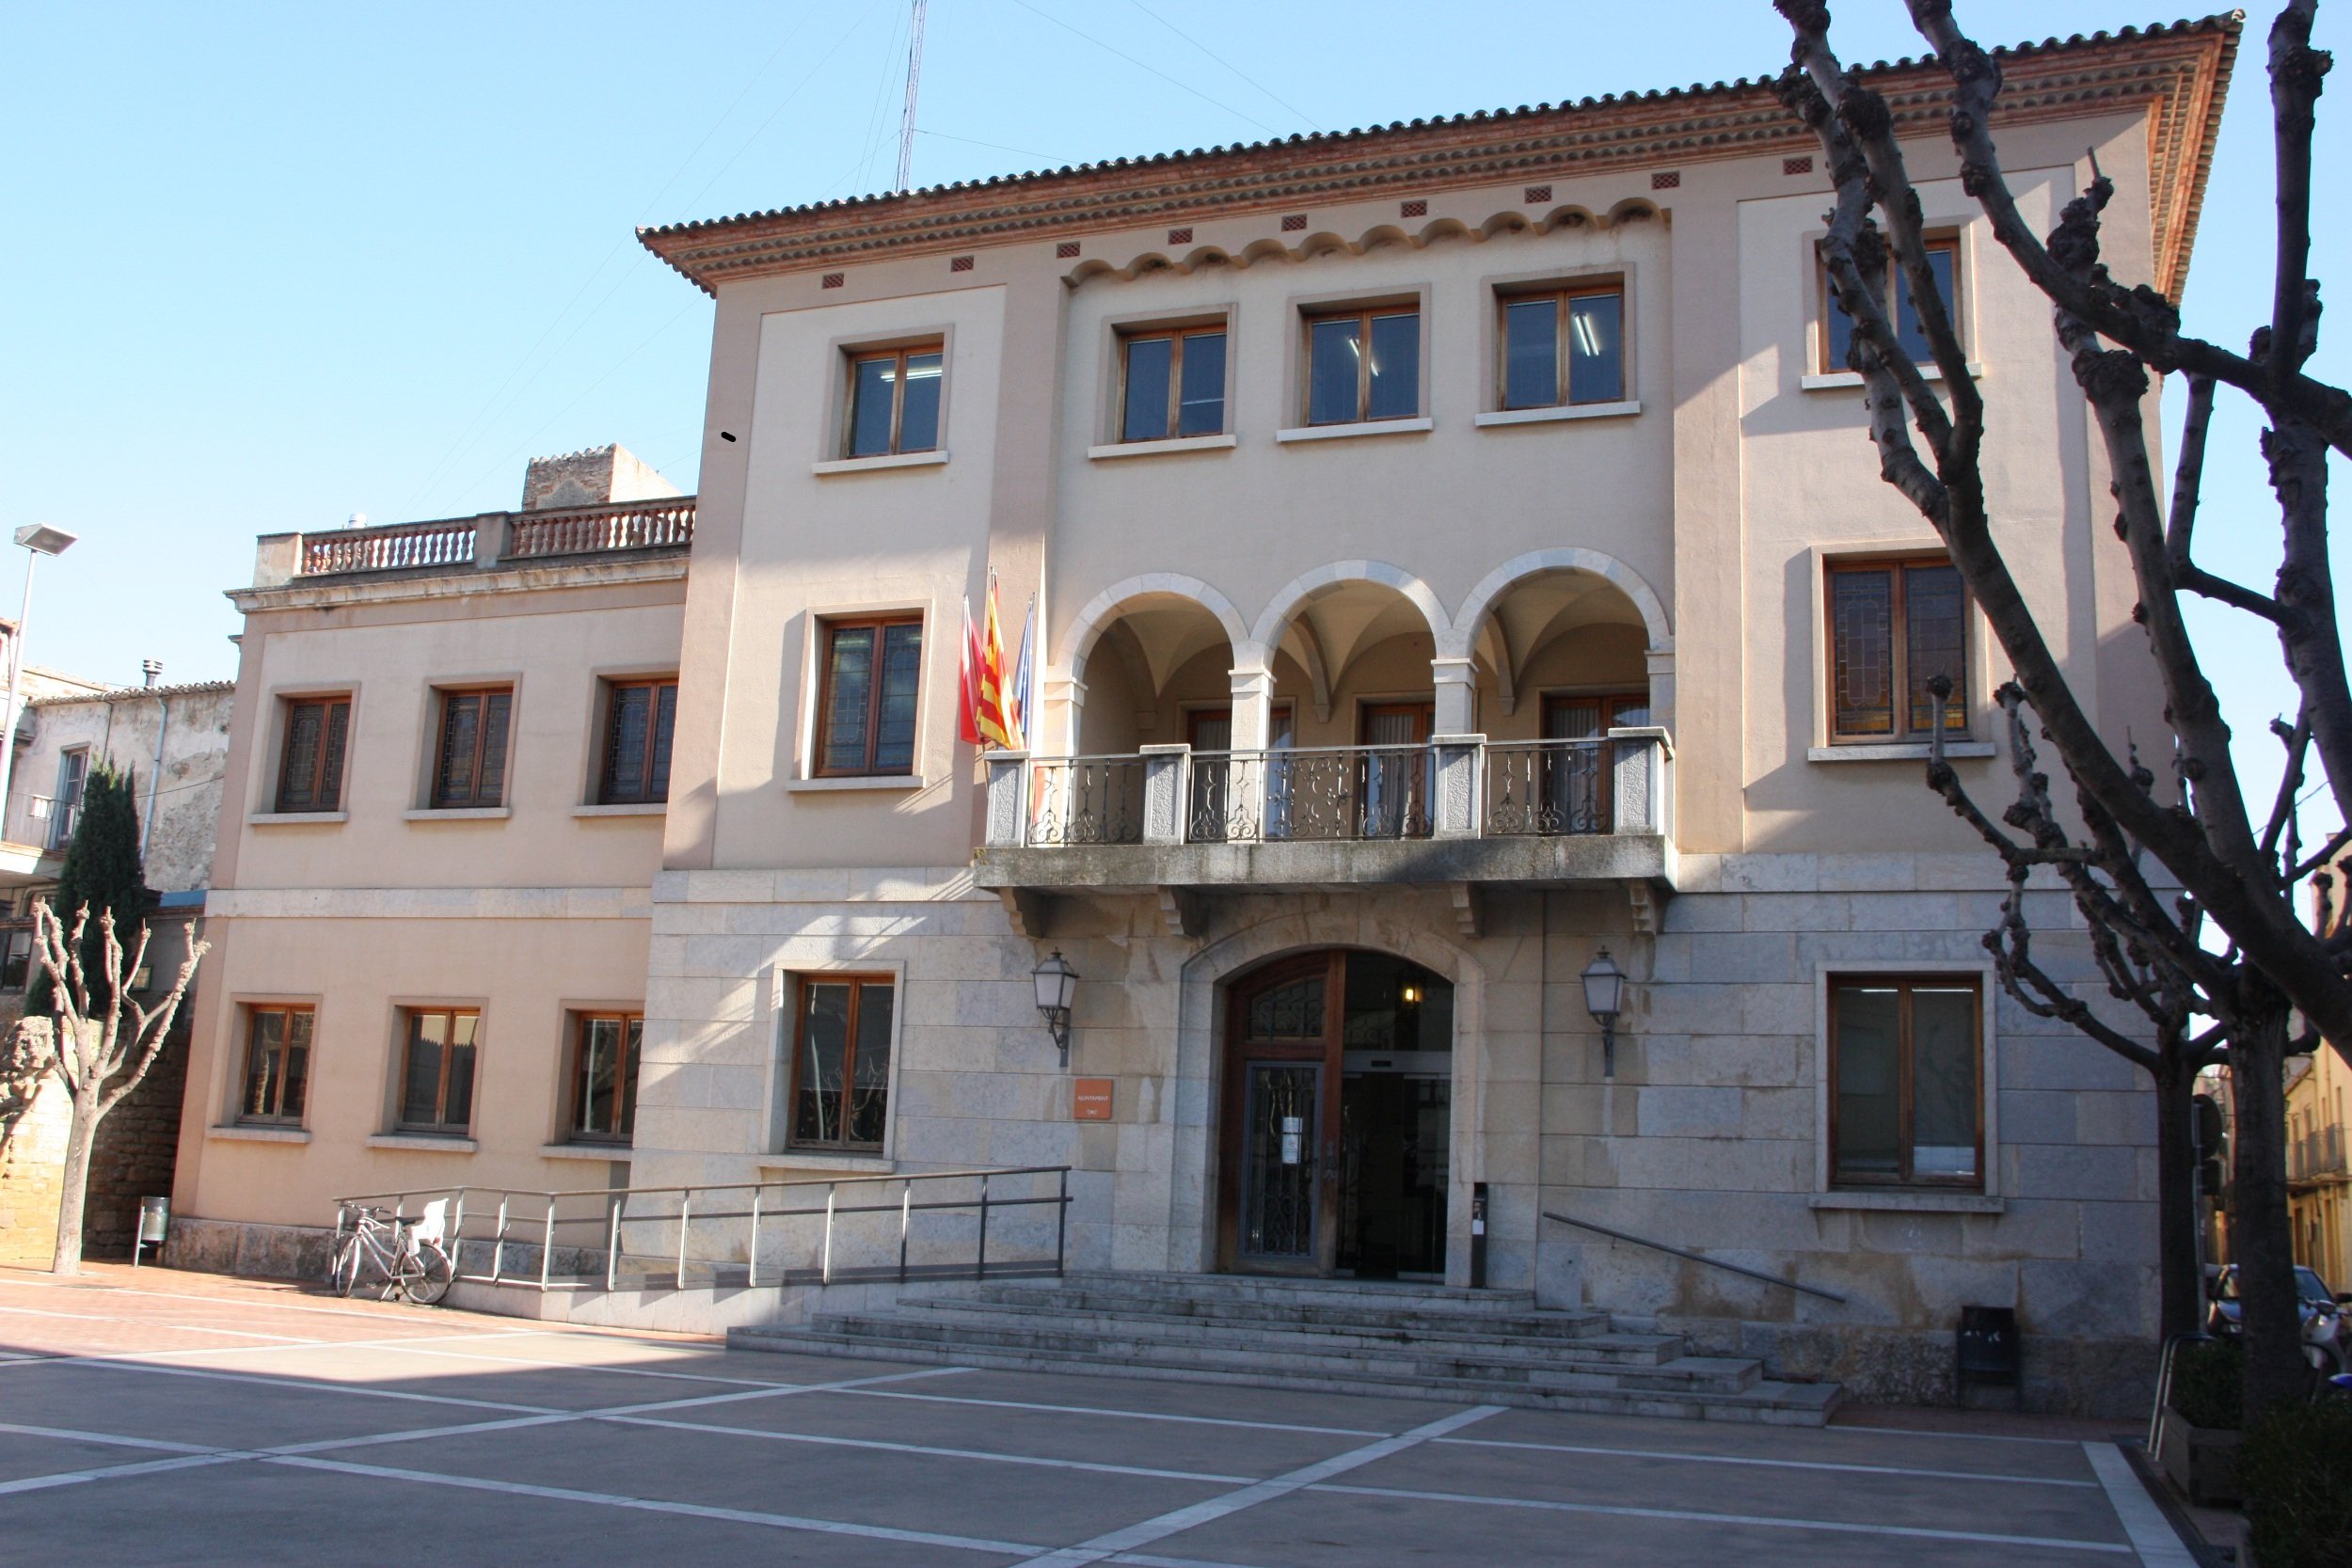 Condenado el Ayuntamiento de la Bisbal d'Empordà a colgar la bandera española